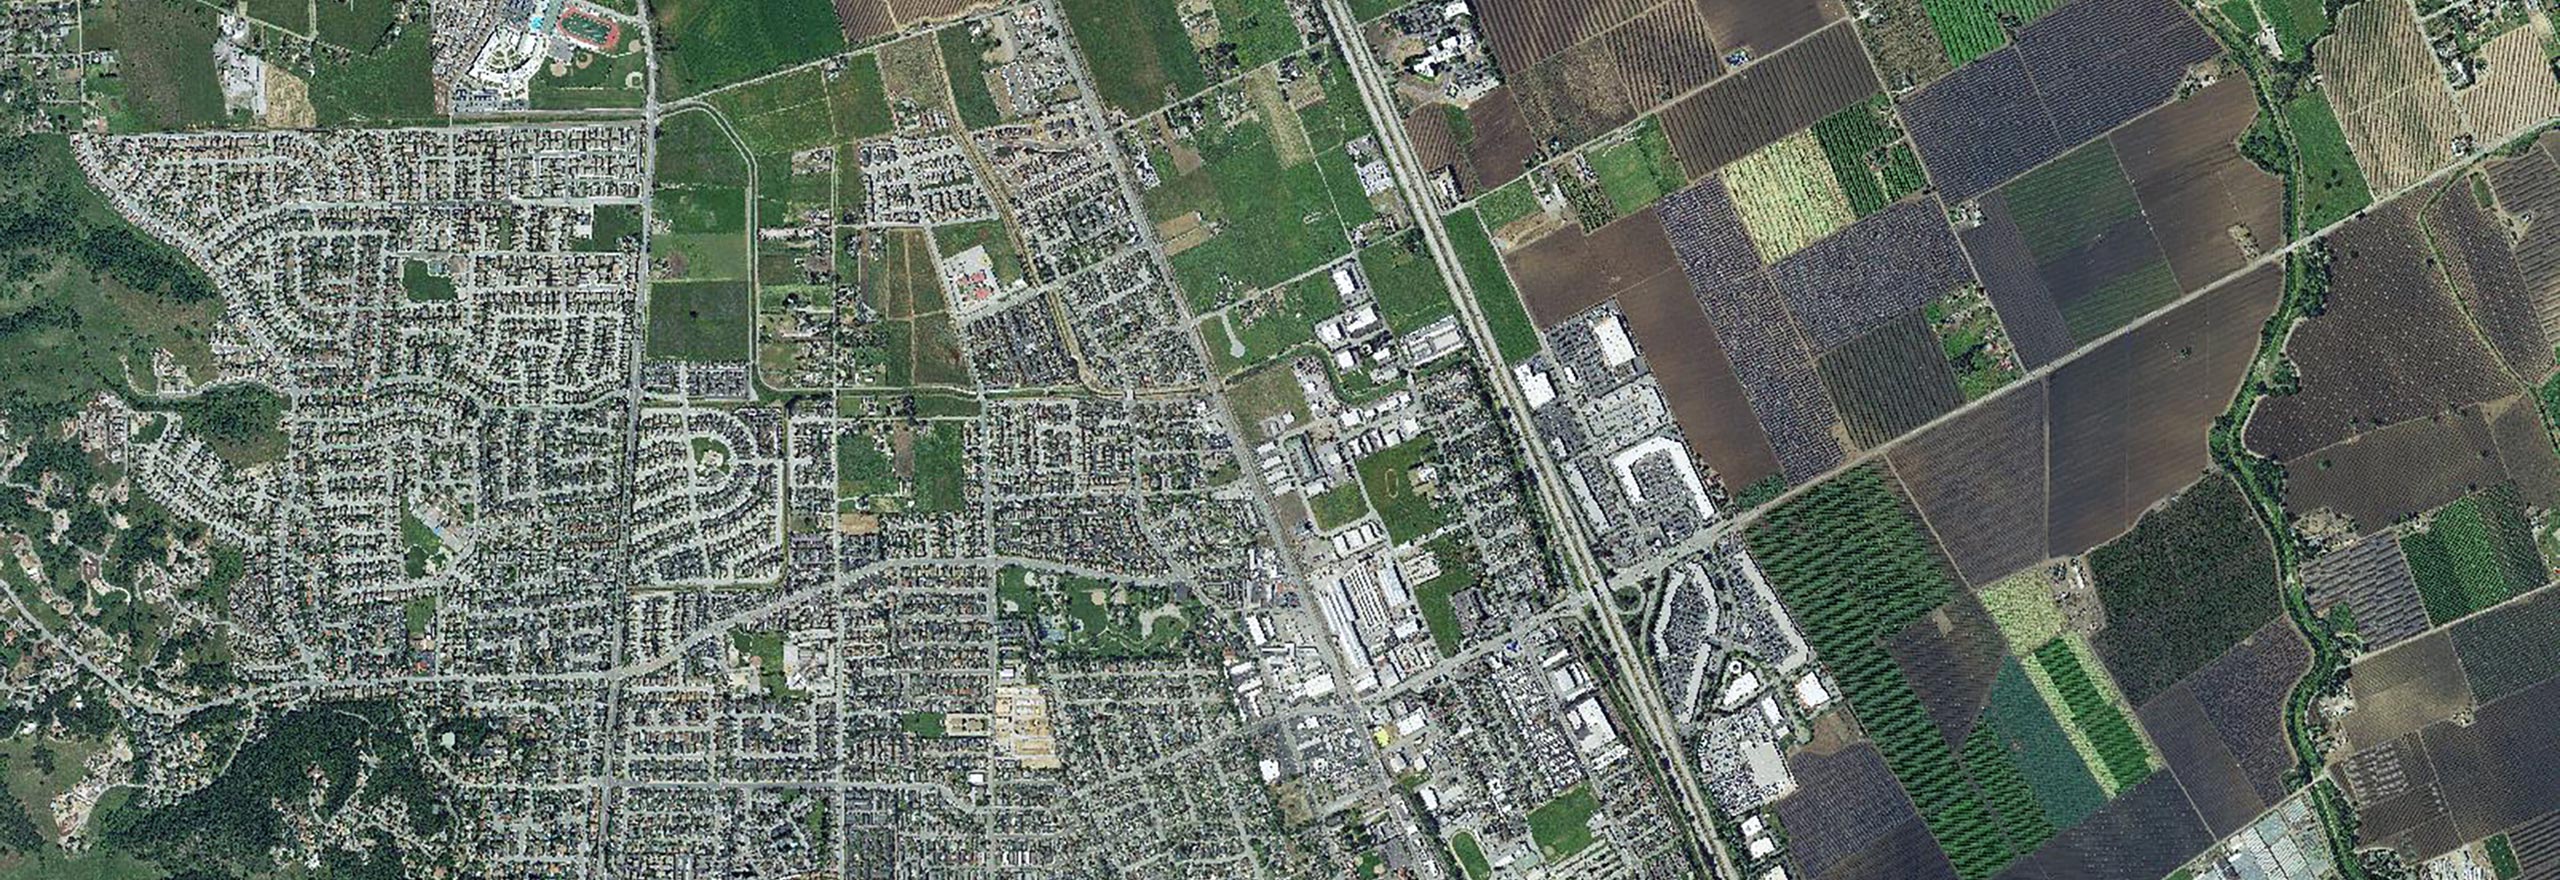 Satellitenbild einer Vorstadt mit nahegelegenem Ackerland